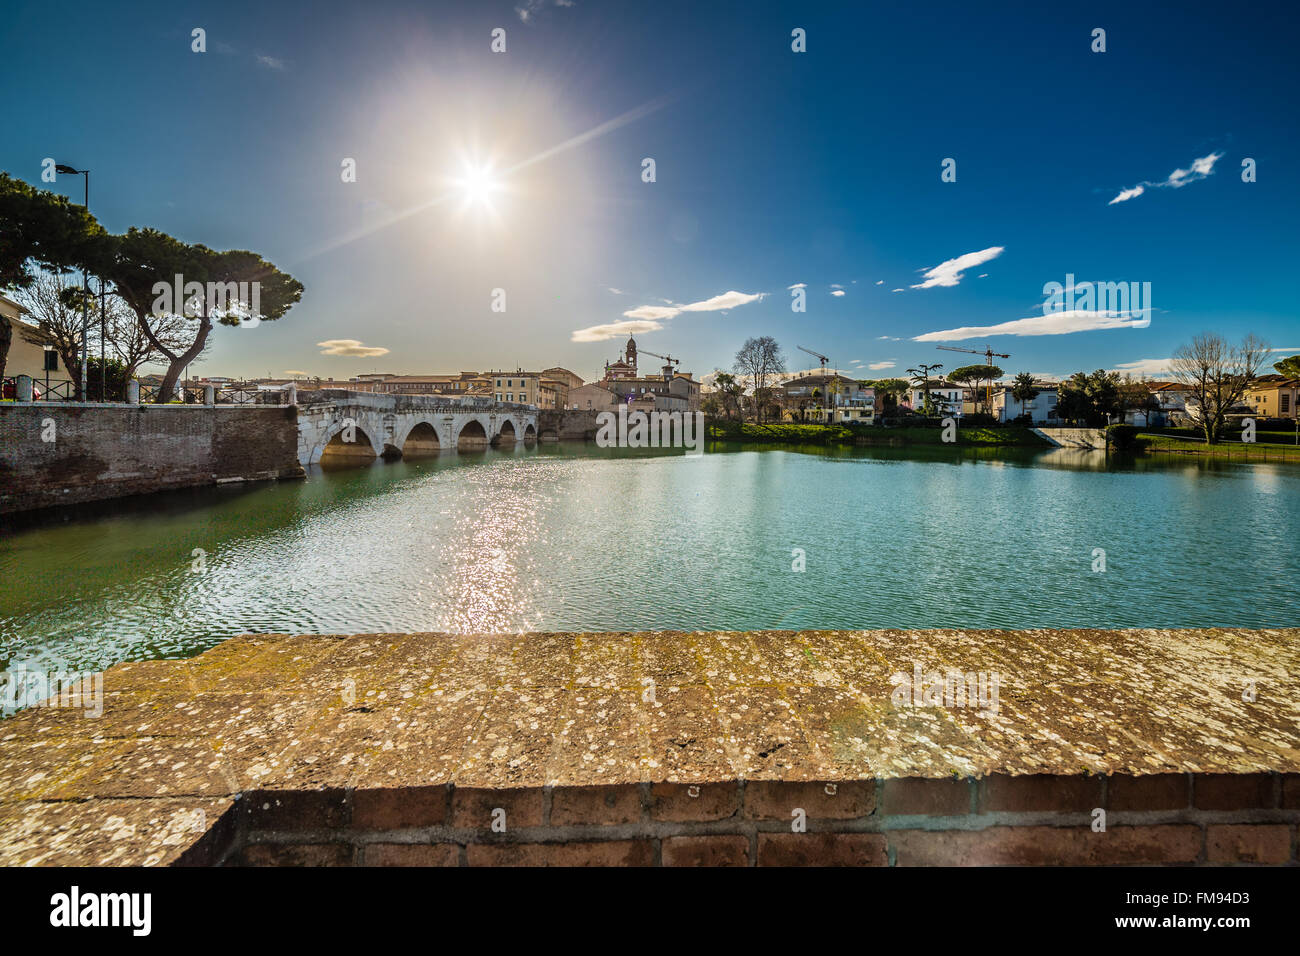 Puente de Tiberio en Rimini, una de las más sólidas estructuras arquitectónicas construidas por los romanos. Foto de stock